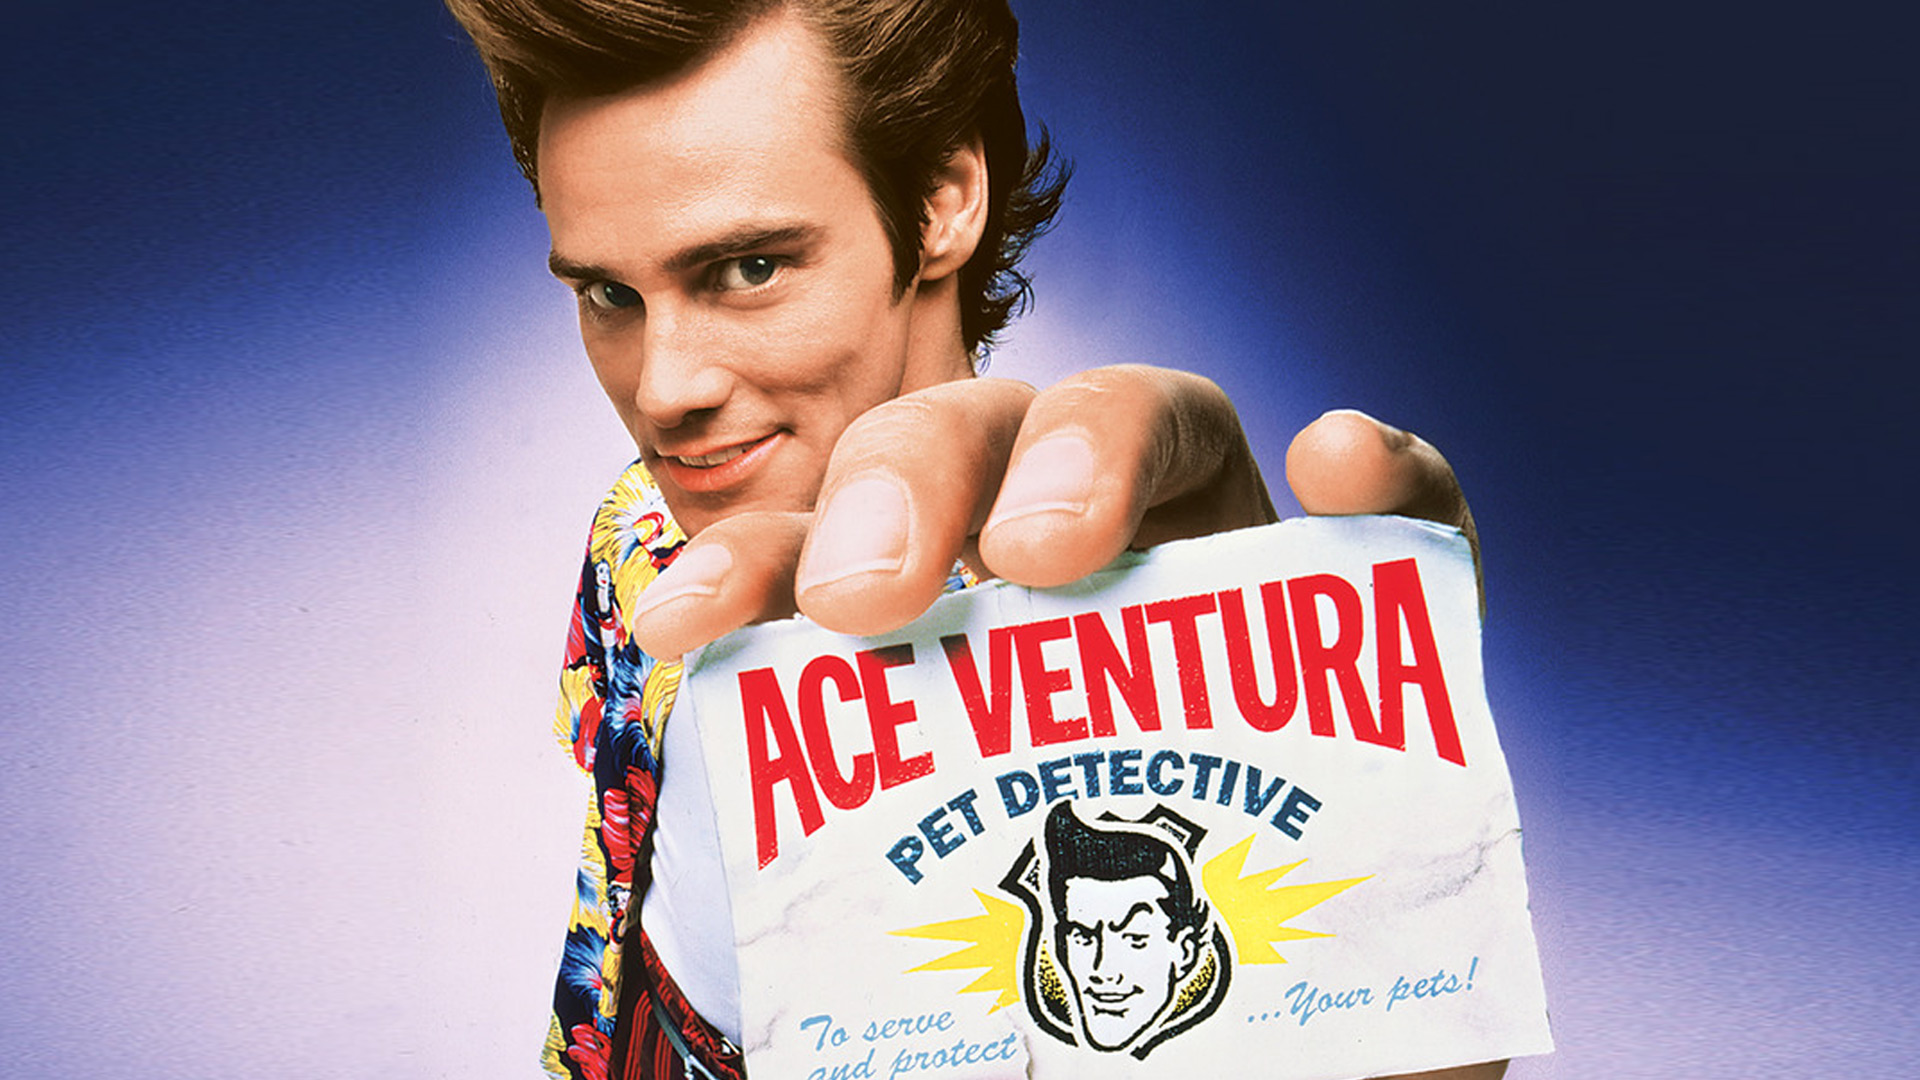 فیلم های خنده دار - Ace Ventura: Pet Detective